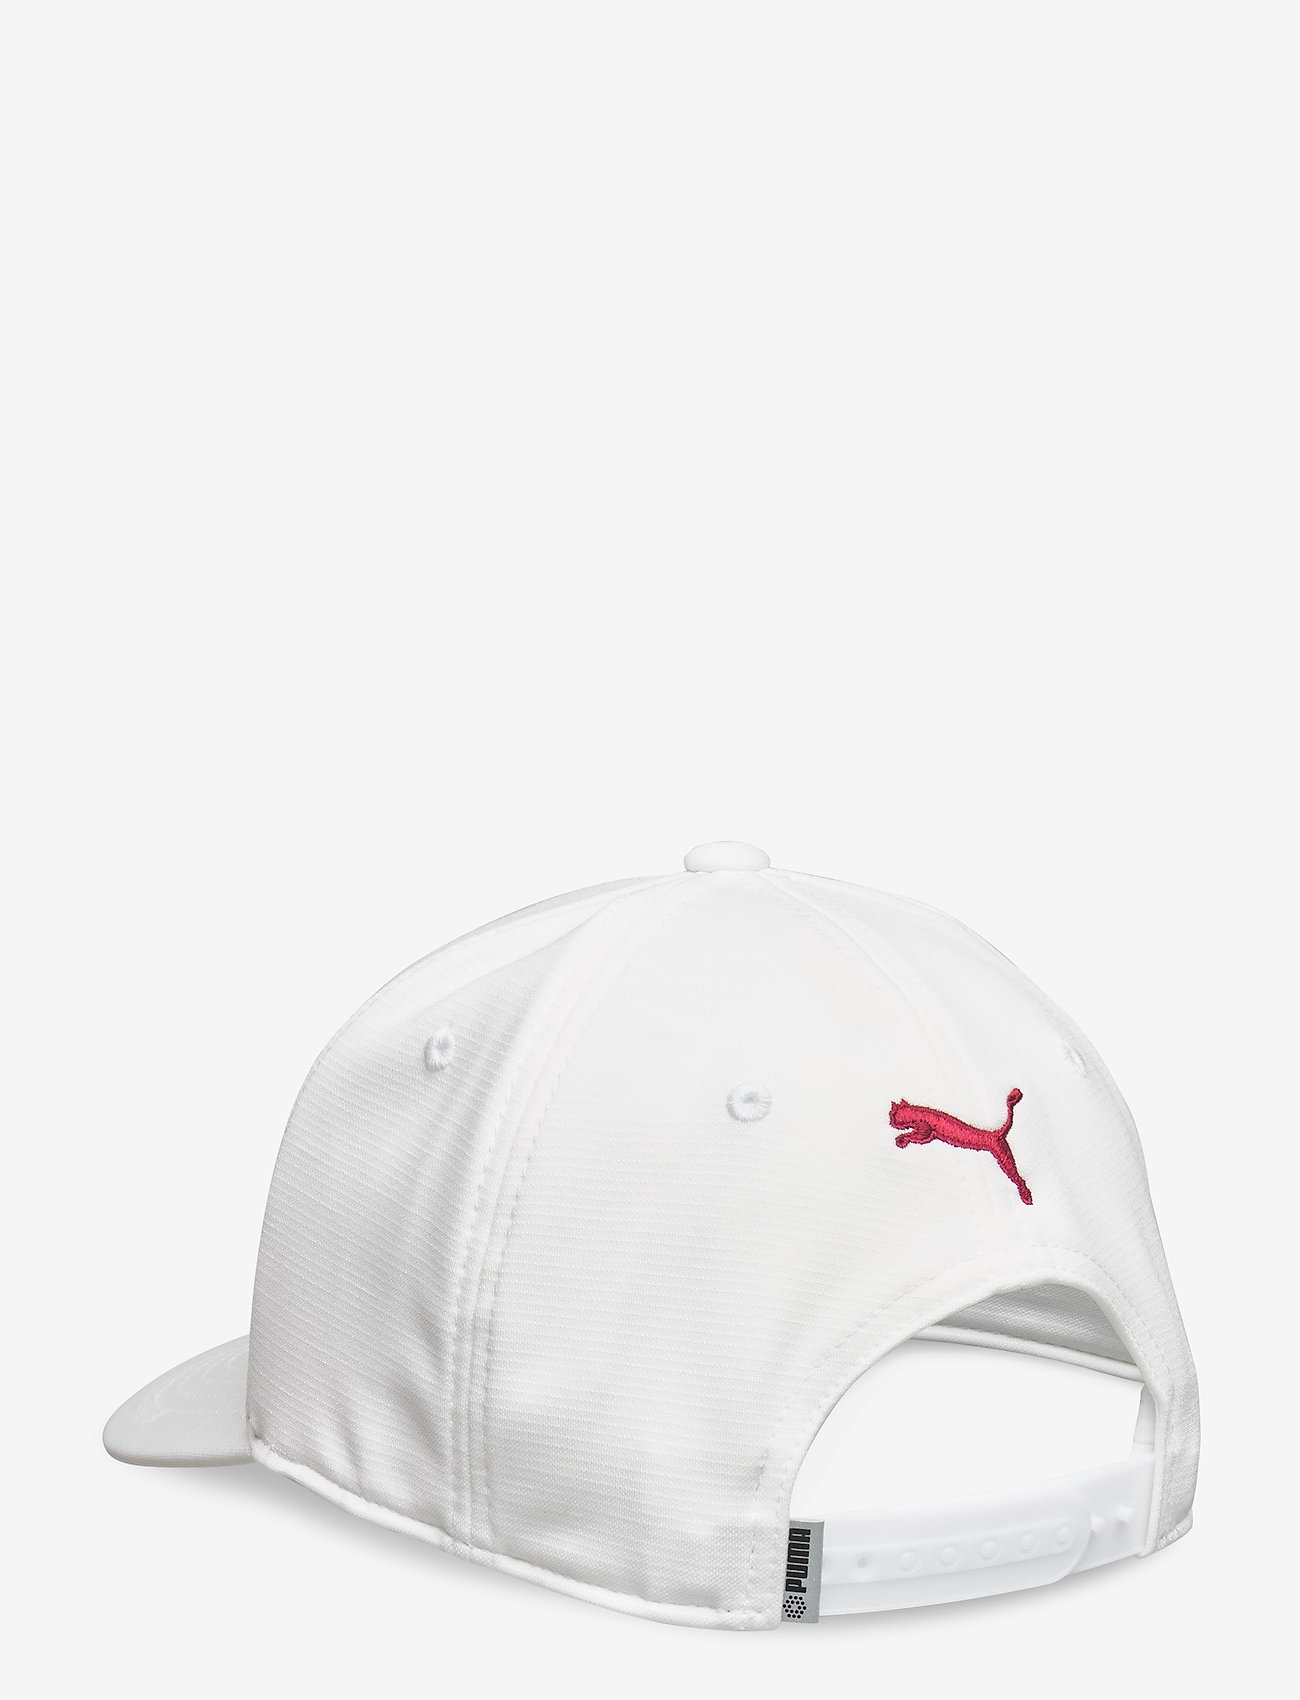 white puma golf hat